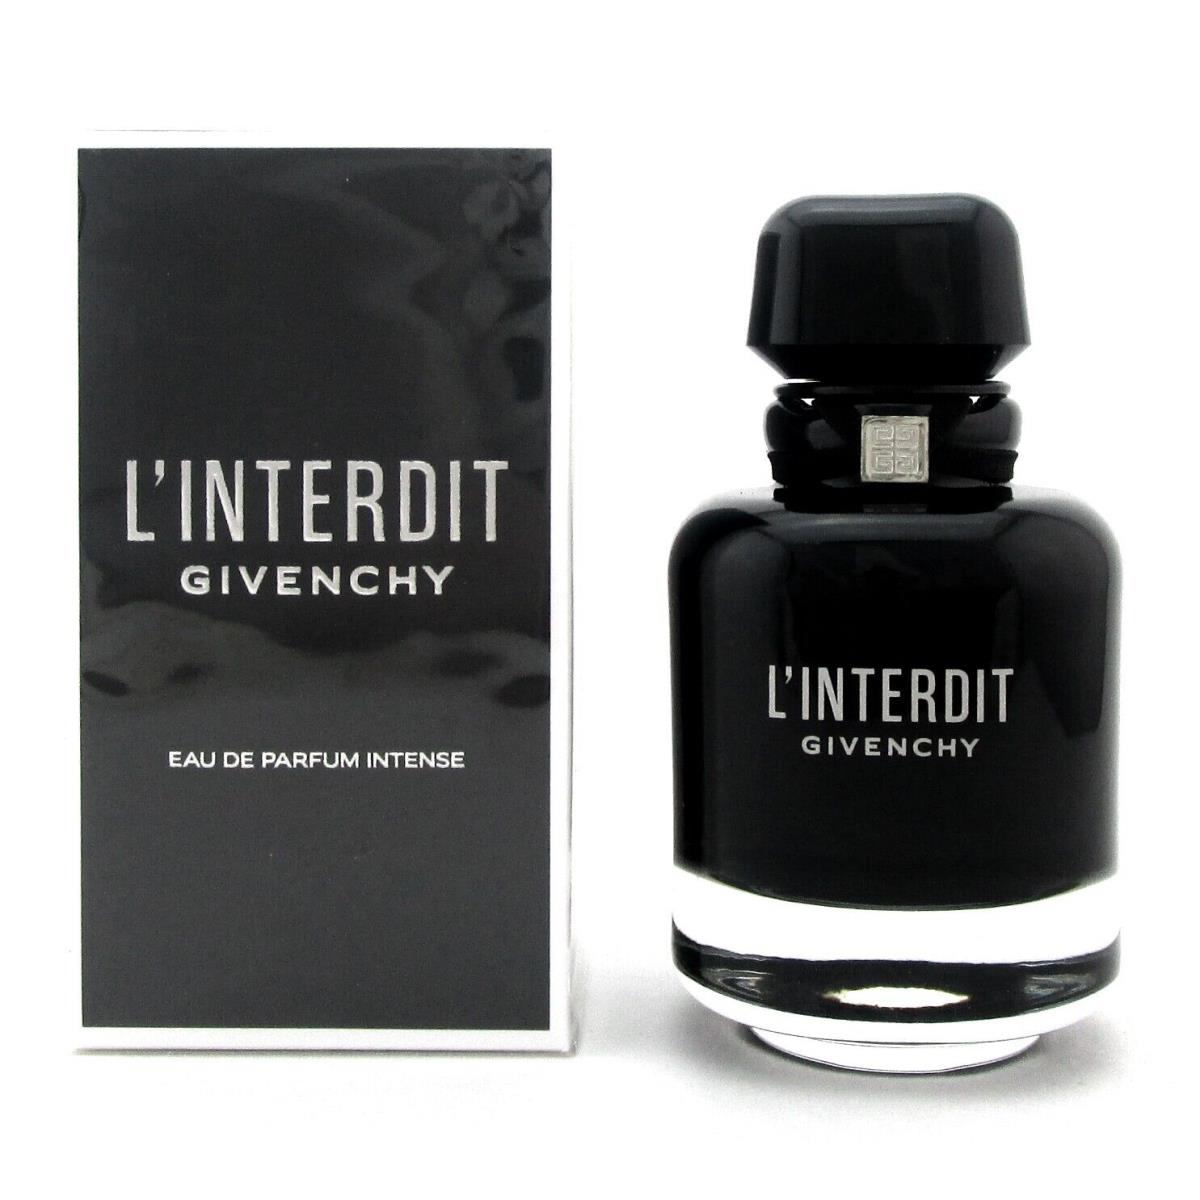 L`interdit Givenchy 2.7 Oz. Eau de Parfum Intense Spray For Women Box